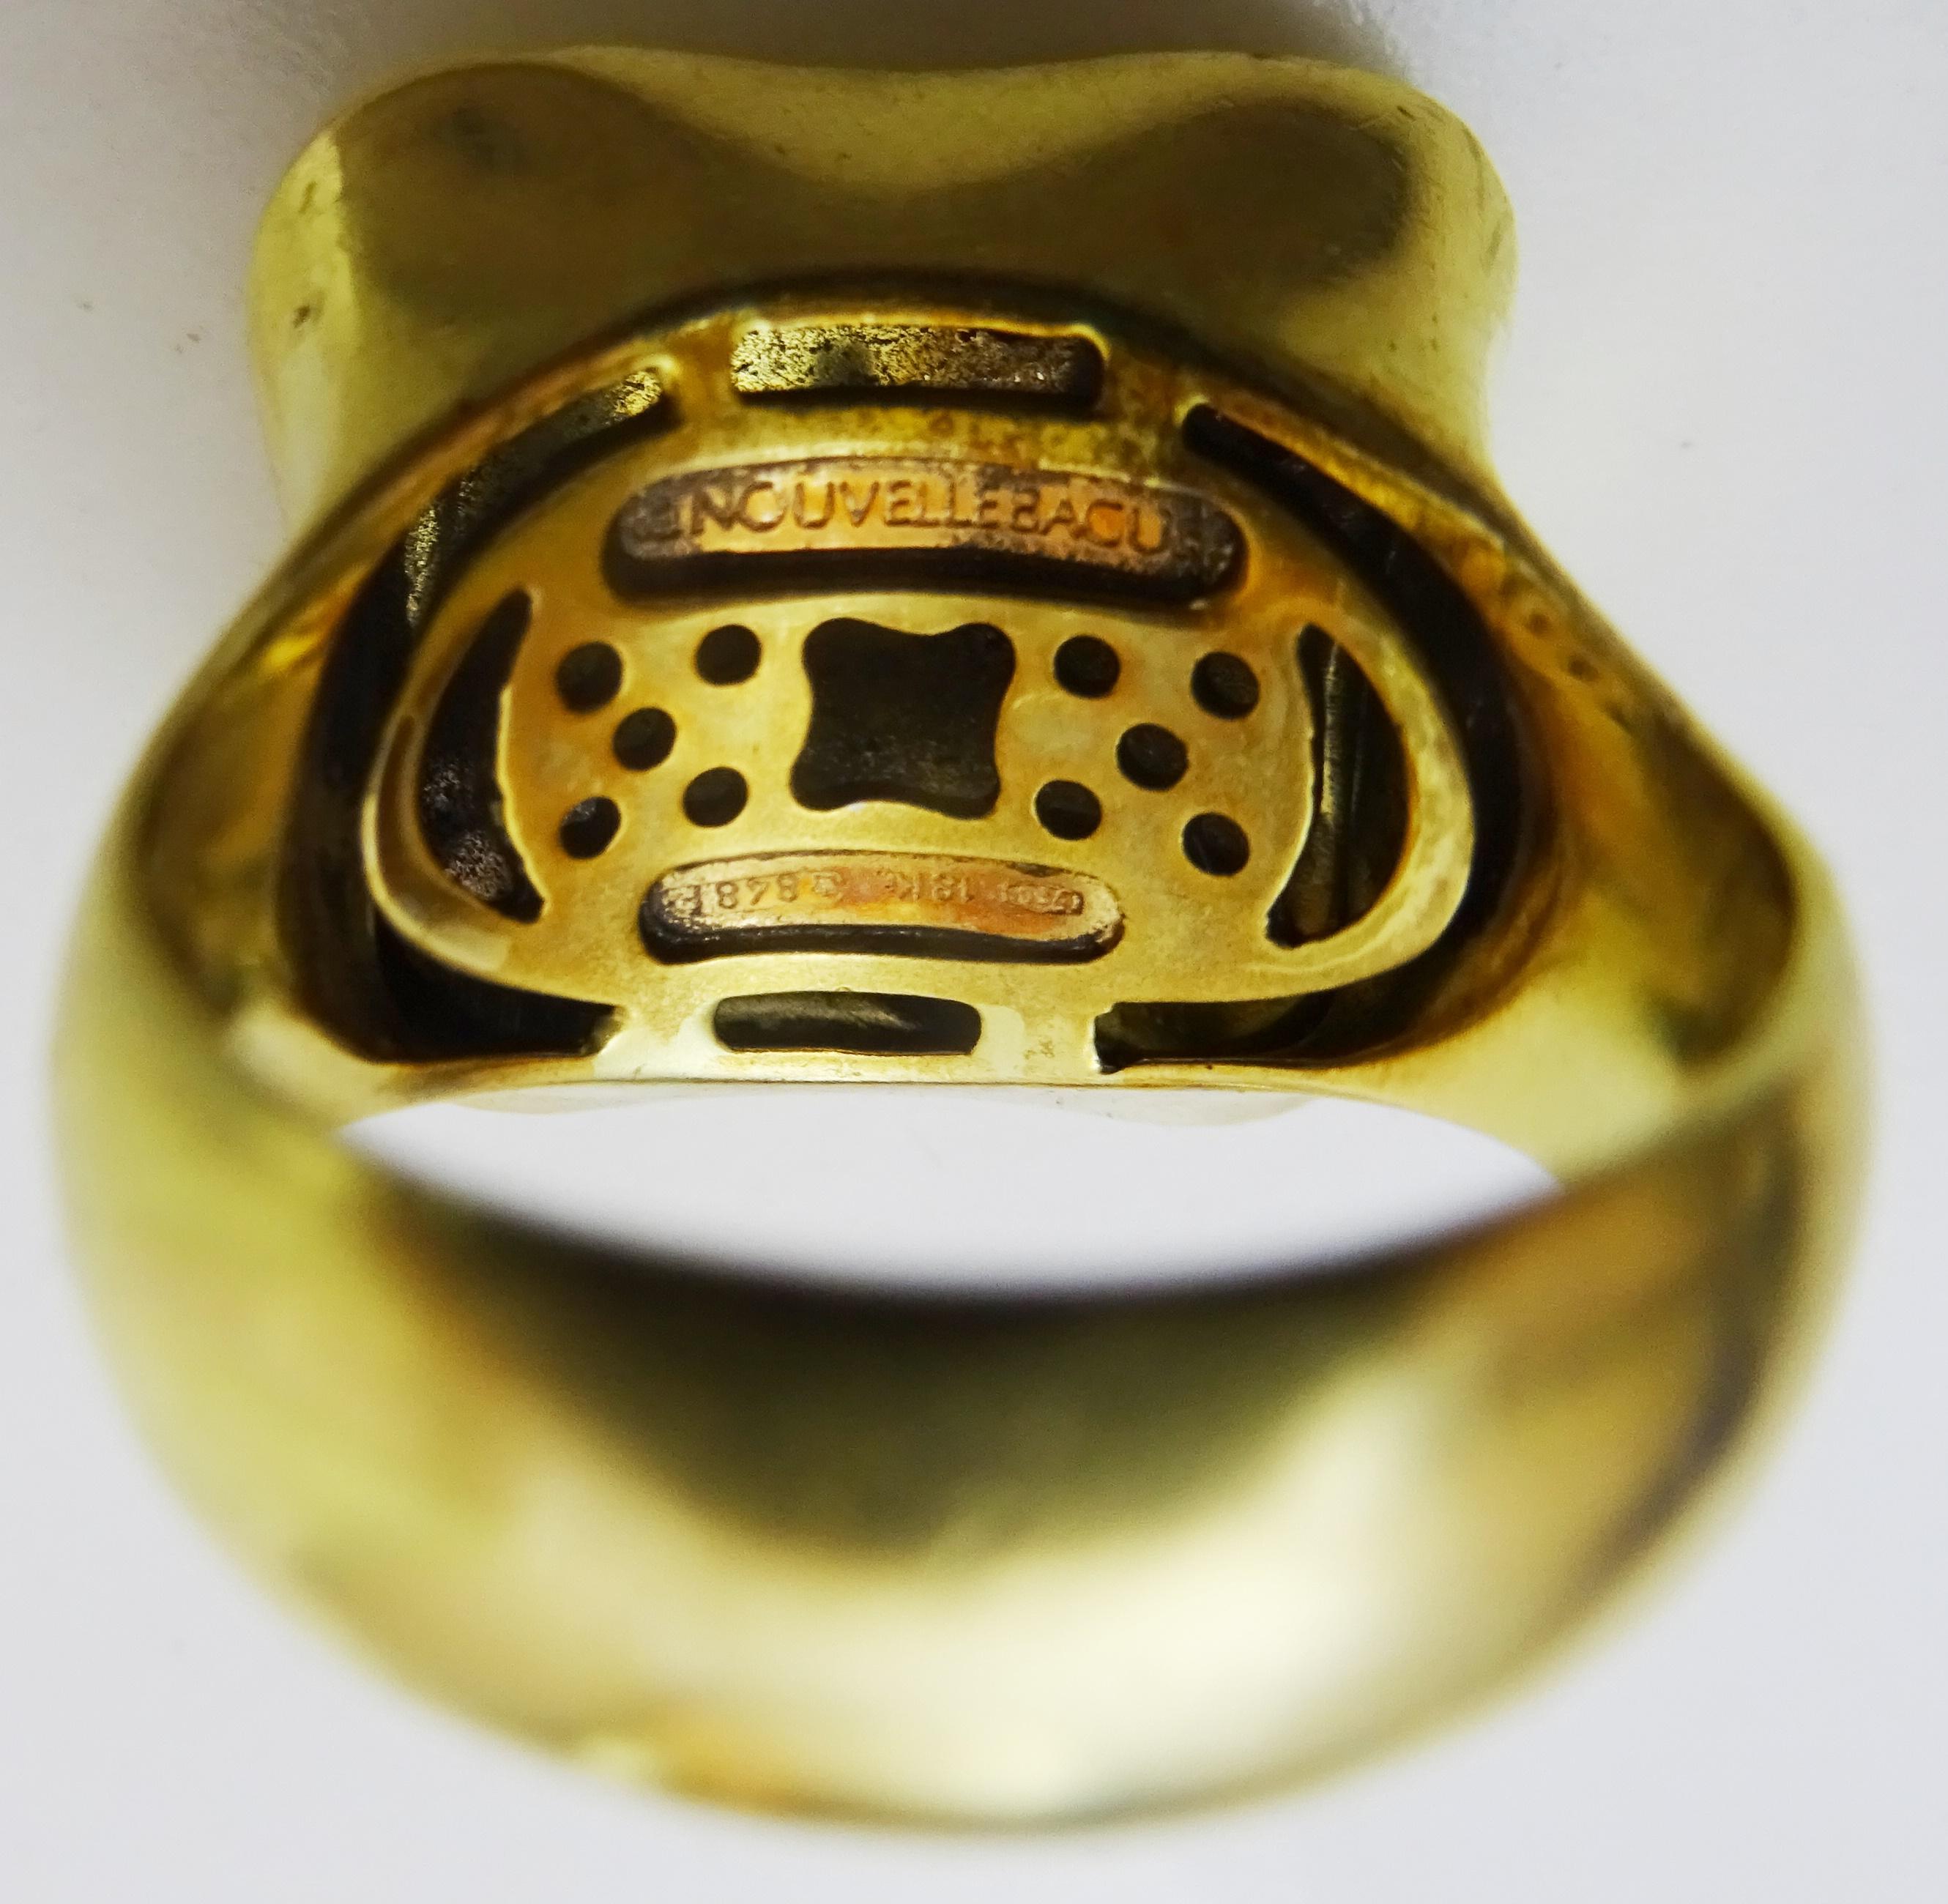 La Nouvelle Bague 18 Karat Gold Fiori Ring with Diamonds For Sale 1